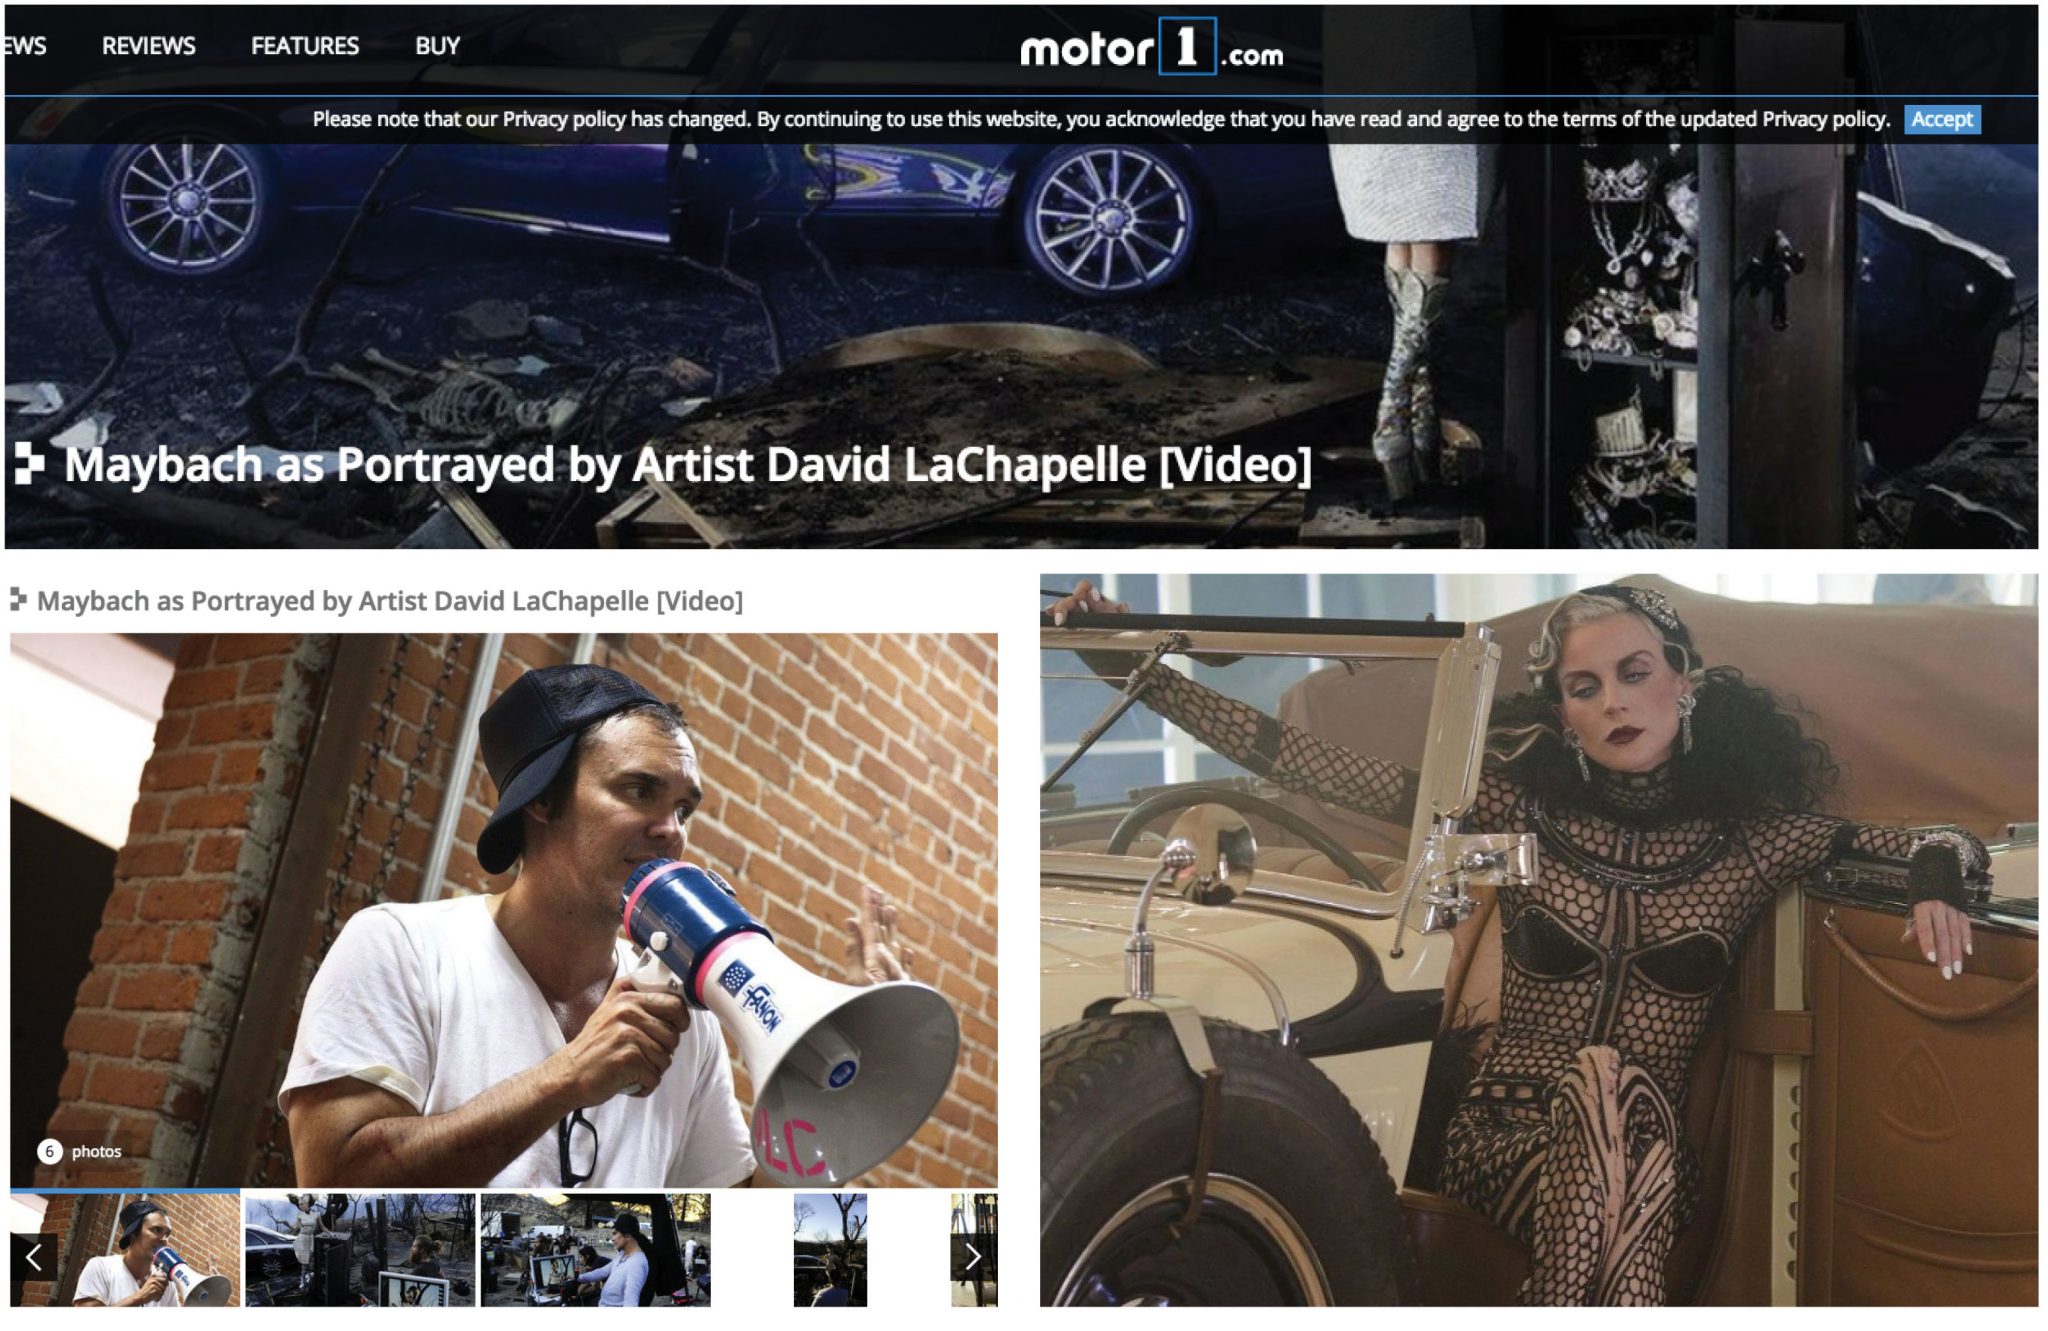 David LaChapelle | Maybach | Selected Press: MOTOR 1 | 18